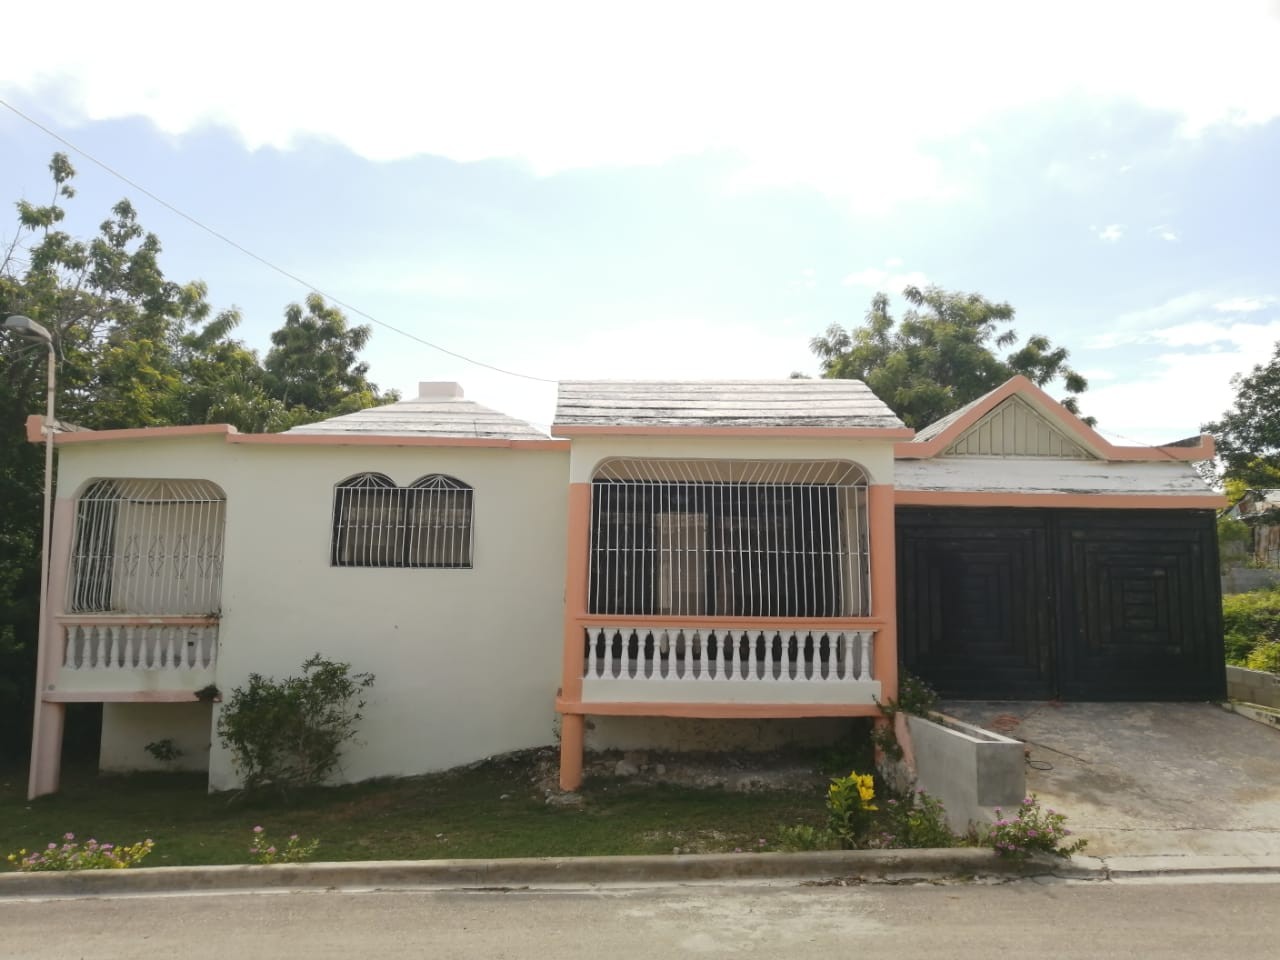 casas - Compra casa en Barahona ¡Tu mejor inversión! #NuevaReservaTurísticaRD
